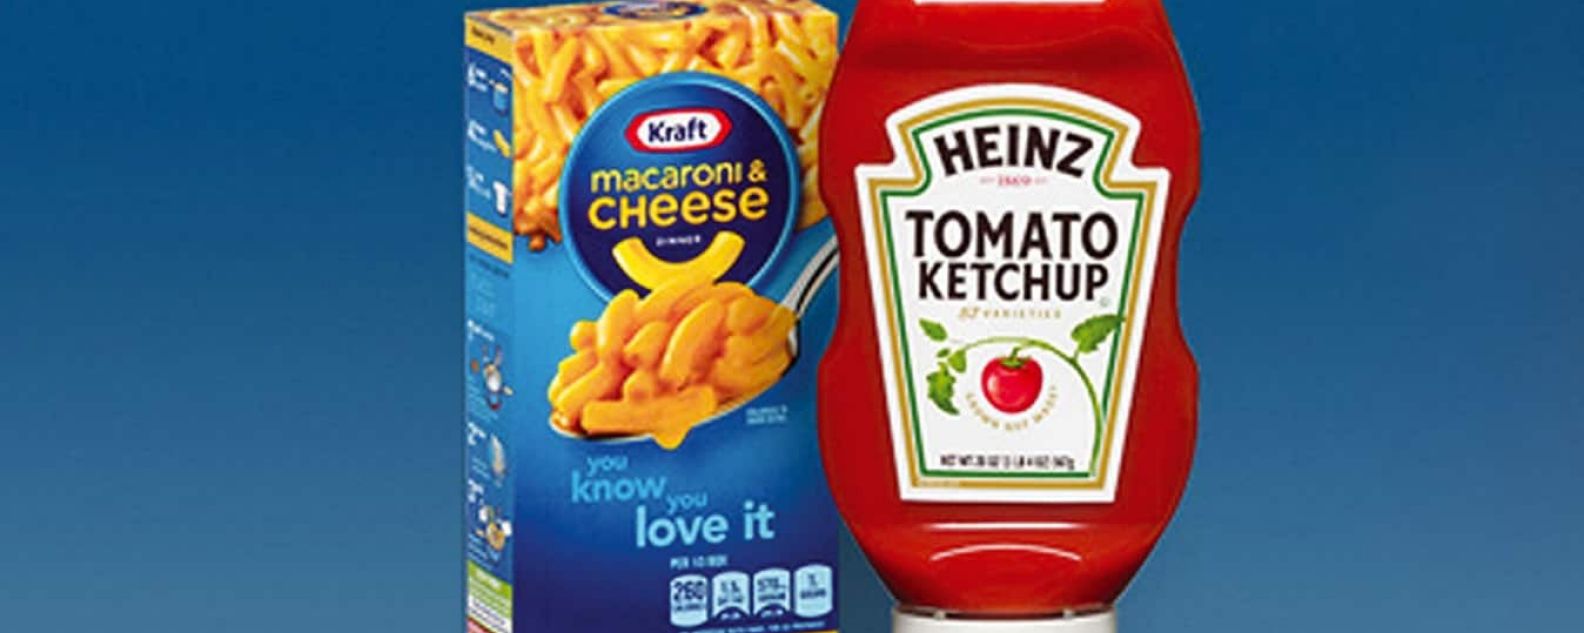 Image avec une boîte de macaronis au fromage et une bouteille de ketchup